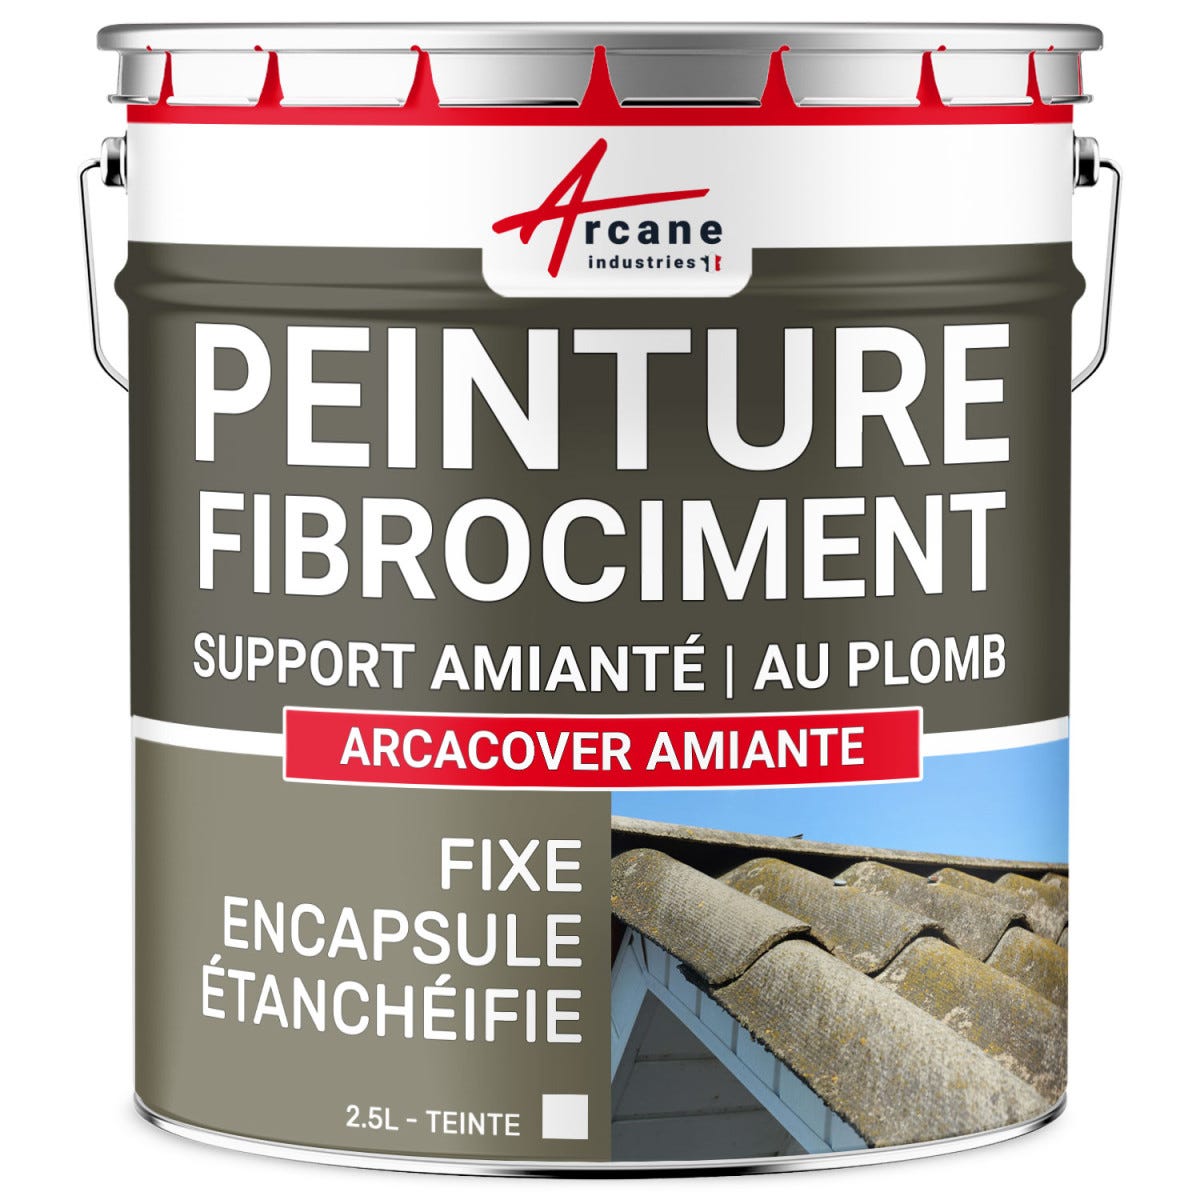 Peinture fibro ciment pour encapsulage support amiante / plomb : ARCACOVER AMIANTE. Blanc - 2.5 LARCANE INDUSTRIES 0